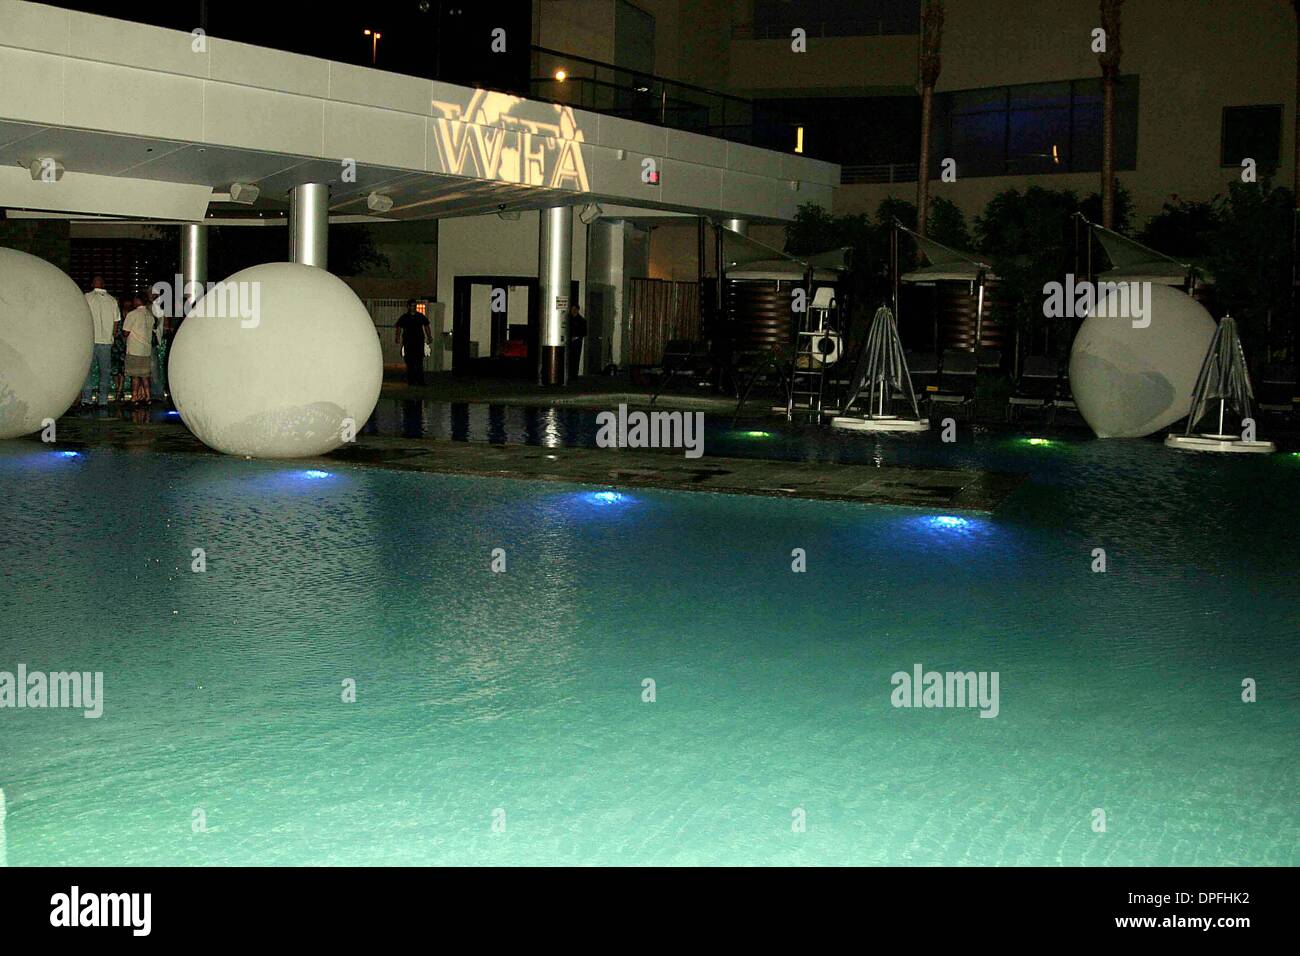 2 luglio 2006 - Hollywood, California, Stati Uniti - K48494EG.944 1ST ANNIVERSARIO party in piscina.Il Palms Hotel Las Vegas , Nevada..07-01-2006. / 2006.(Immagine di credito: © Ed Geller/Globe foto/ZUMAPRESS.com) Foto Stock